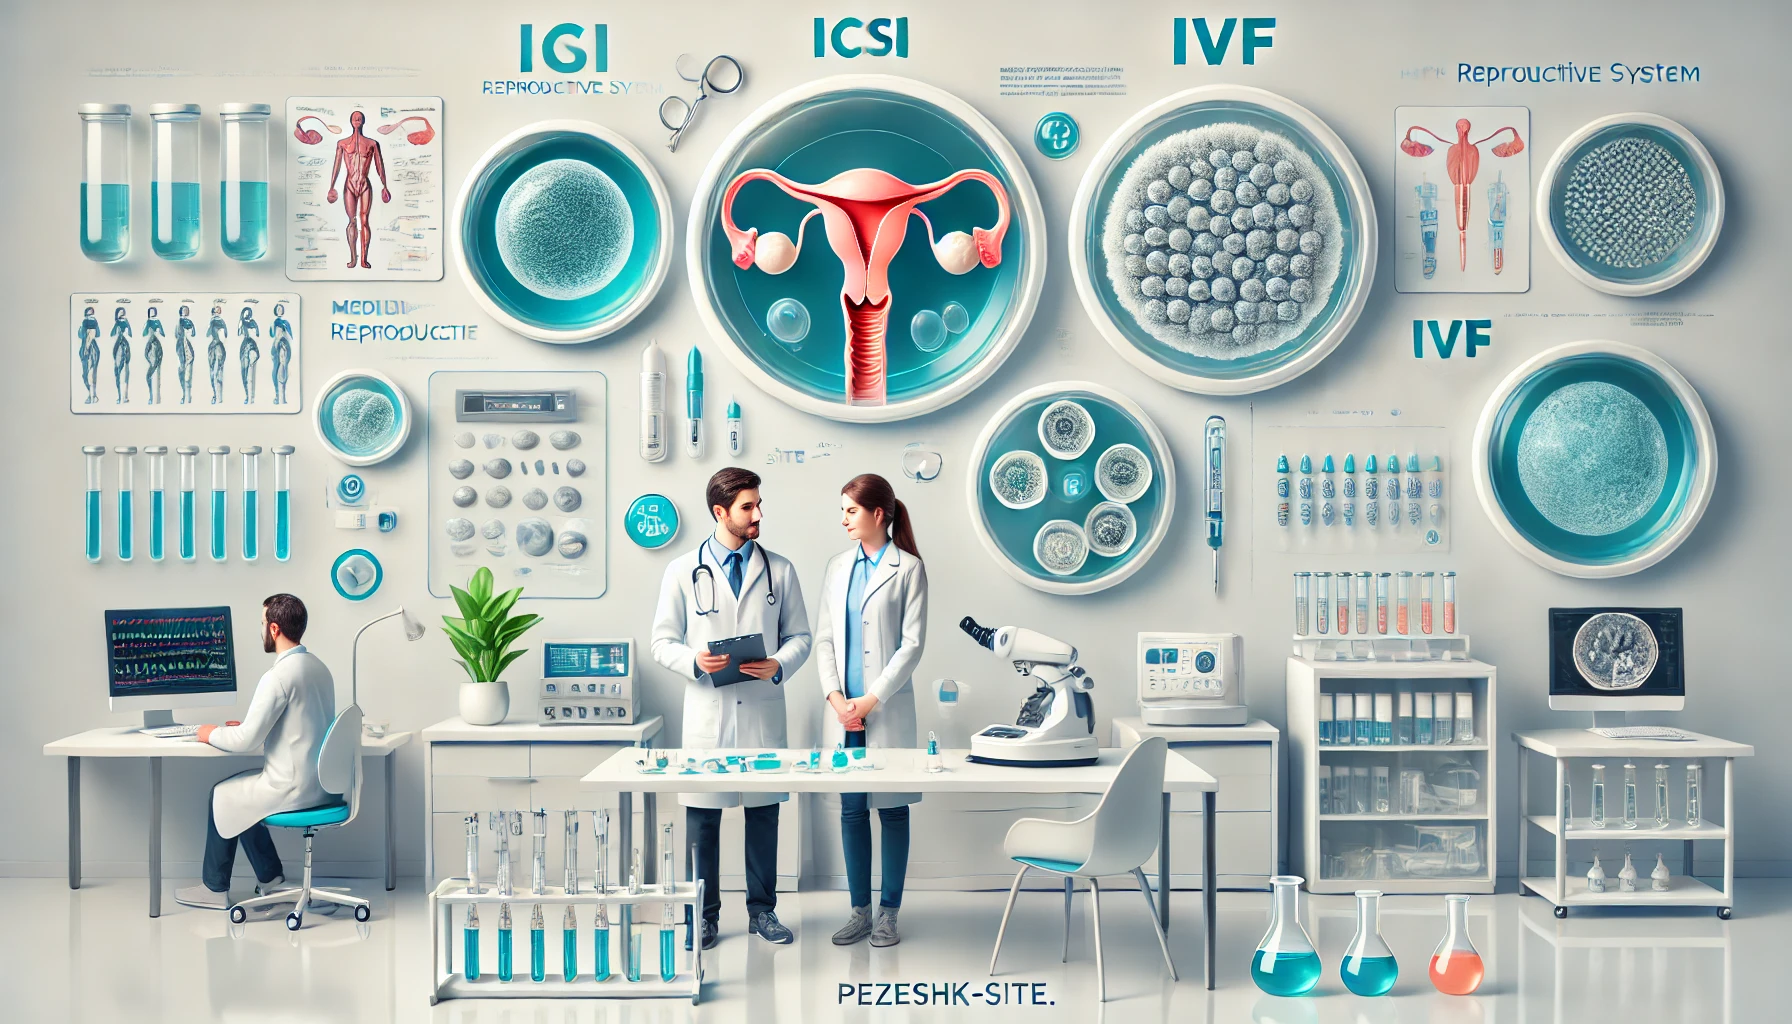 تفاوت ICSI و IVF: راهنمای جامع